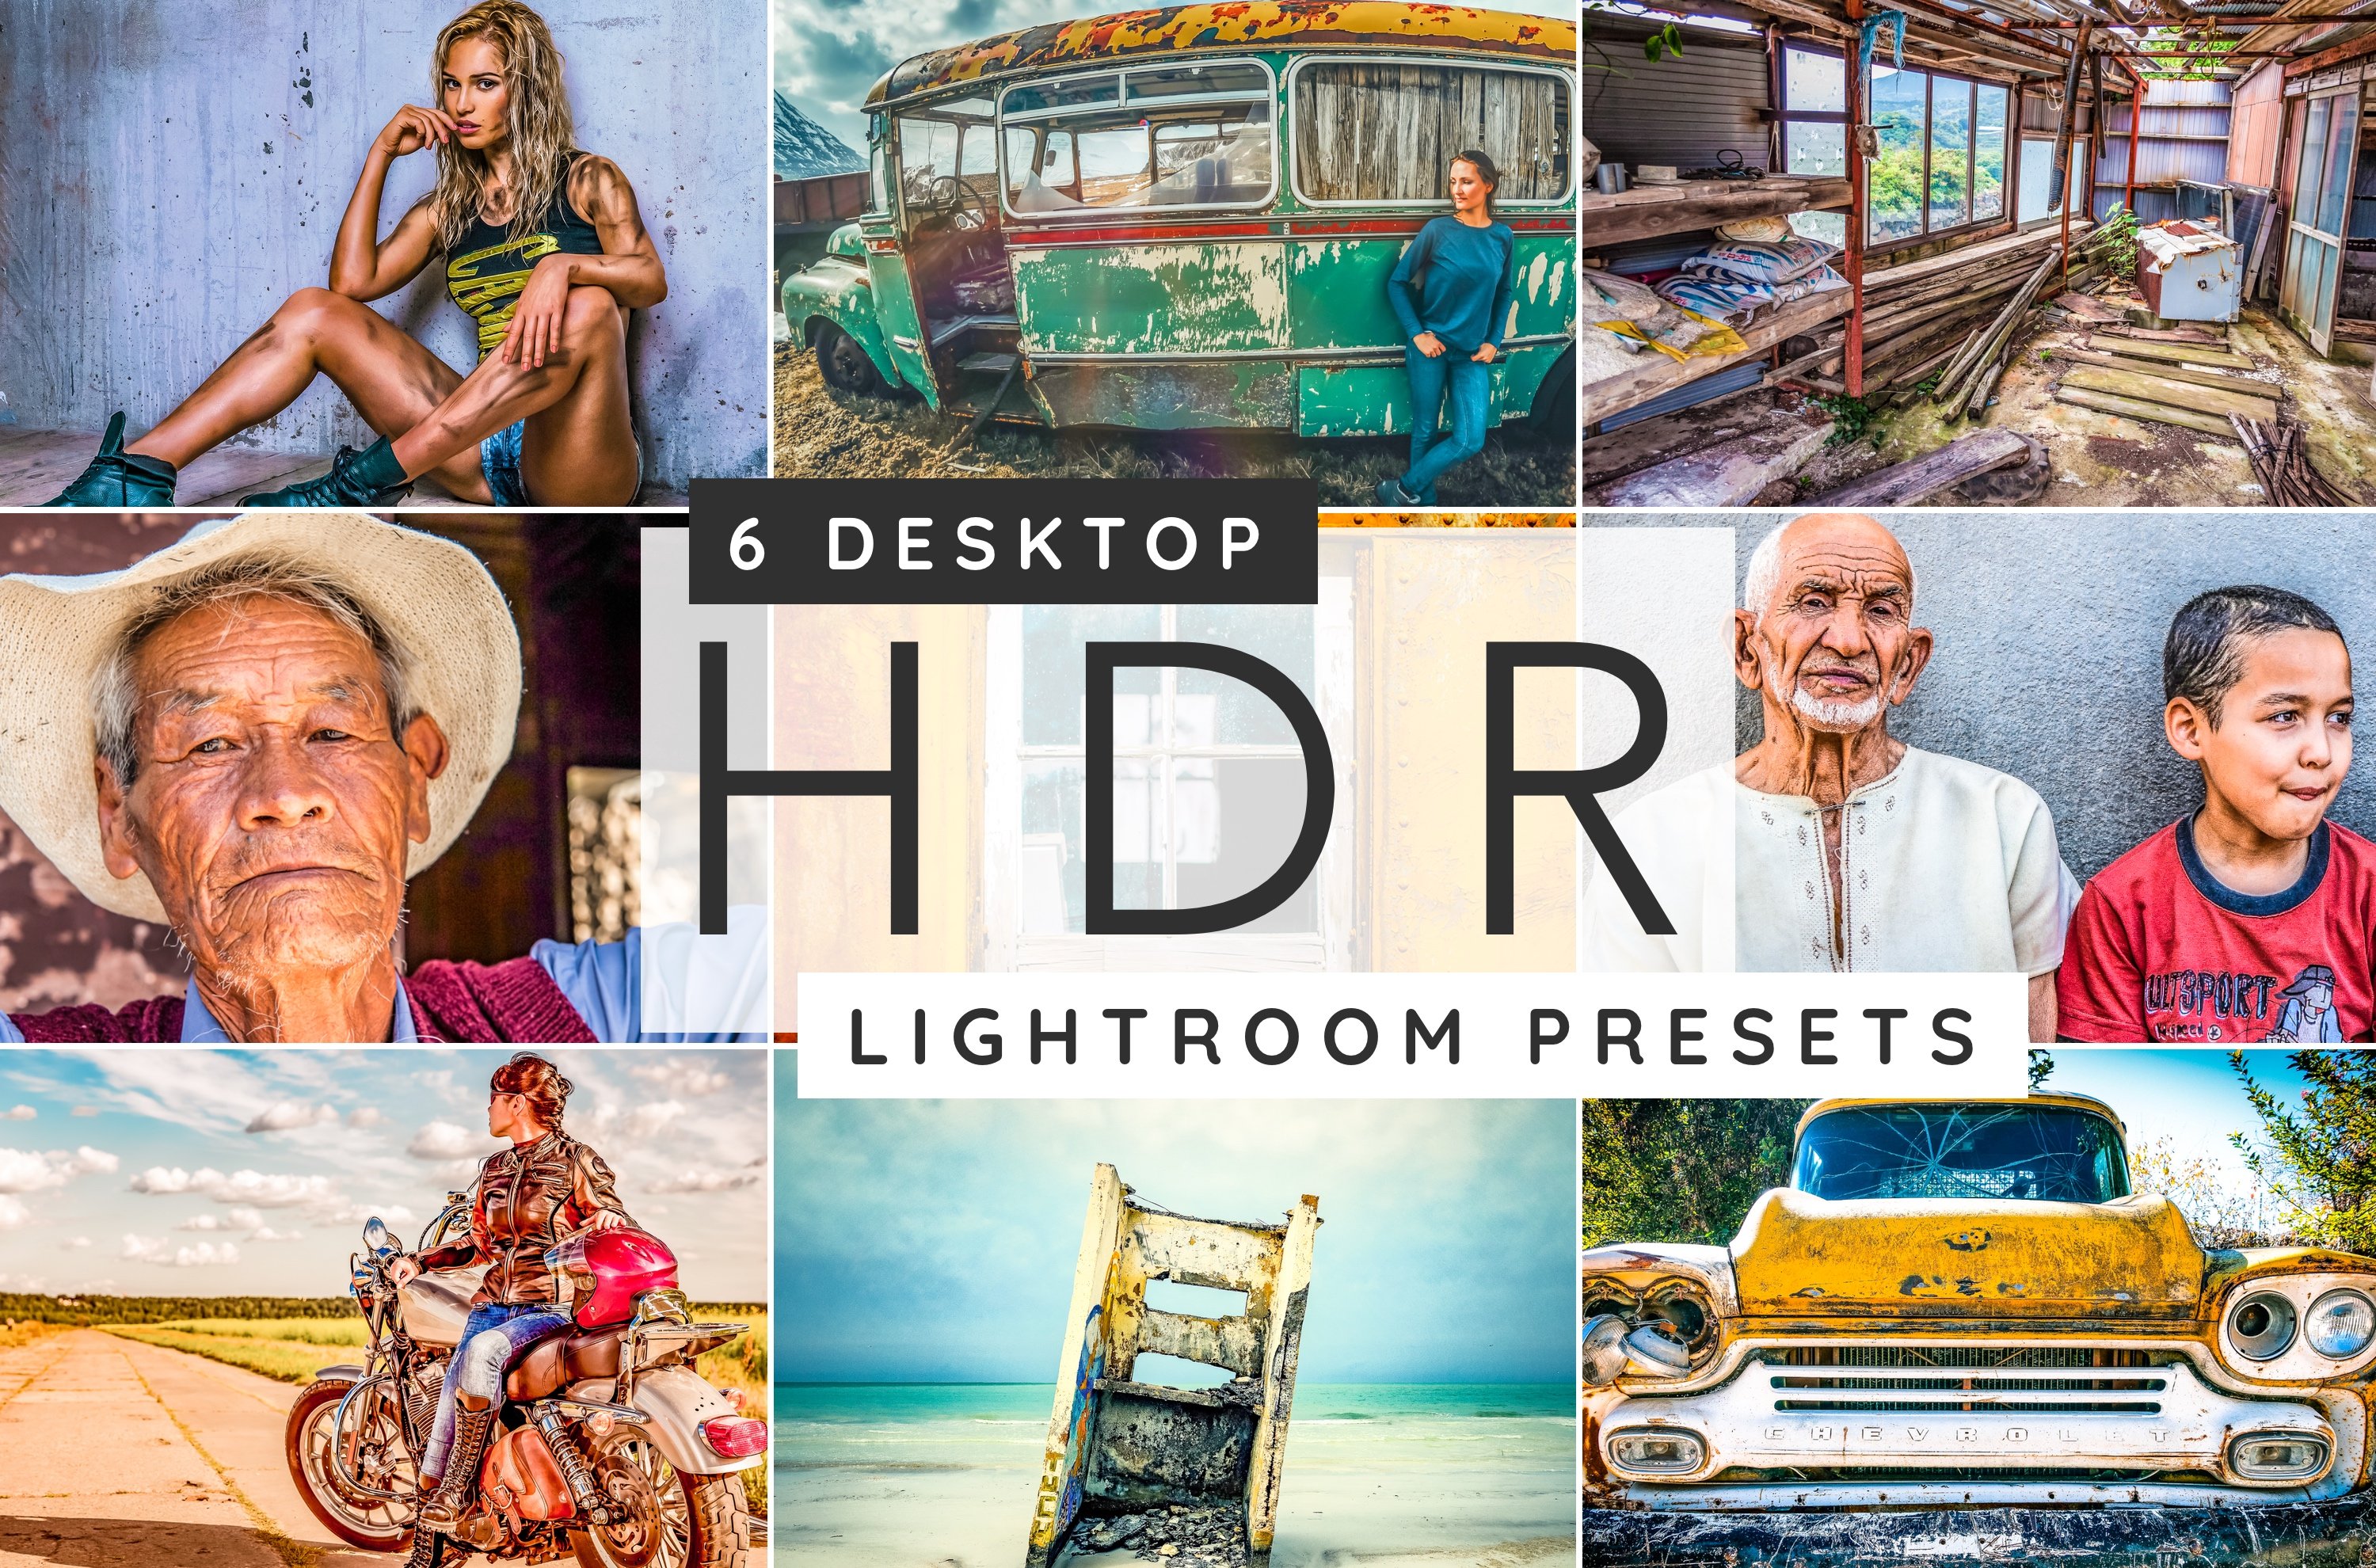 HDR Lightroom desktop presetscover image.